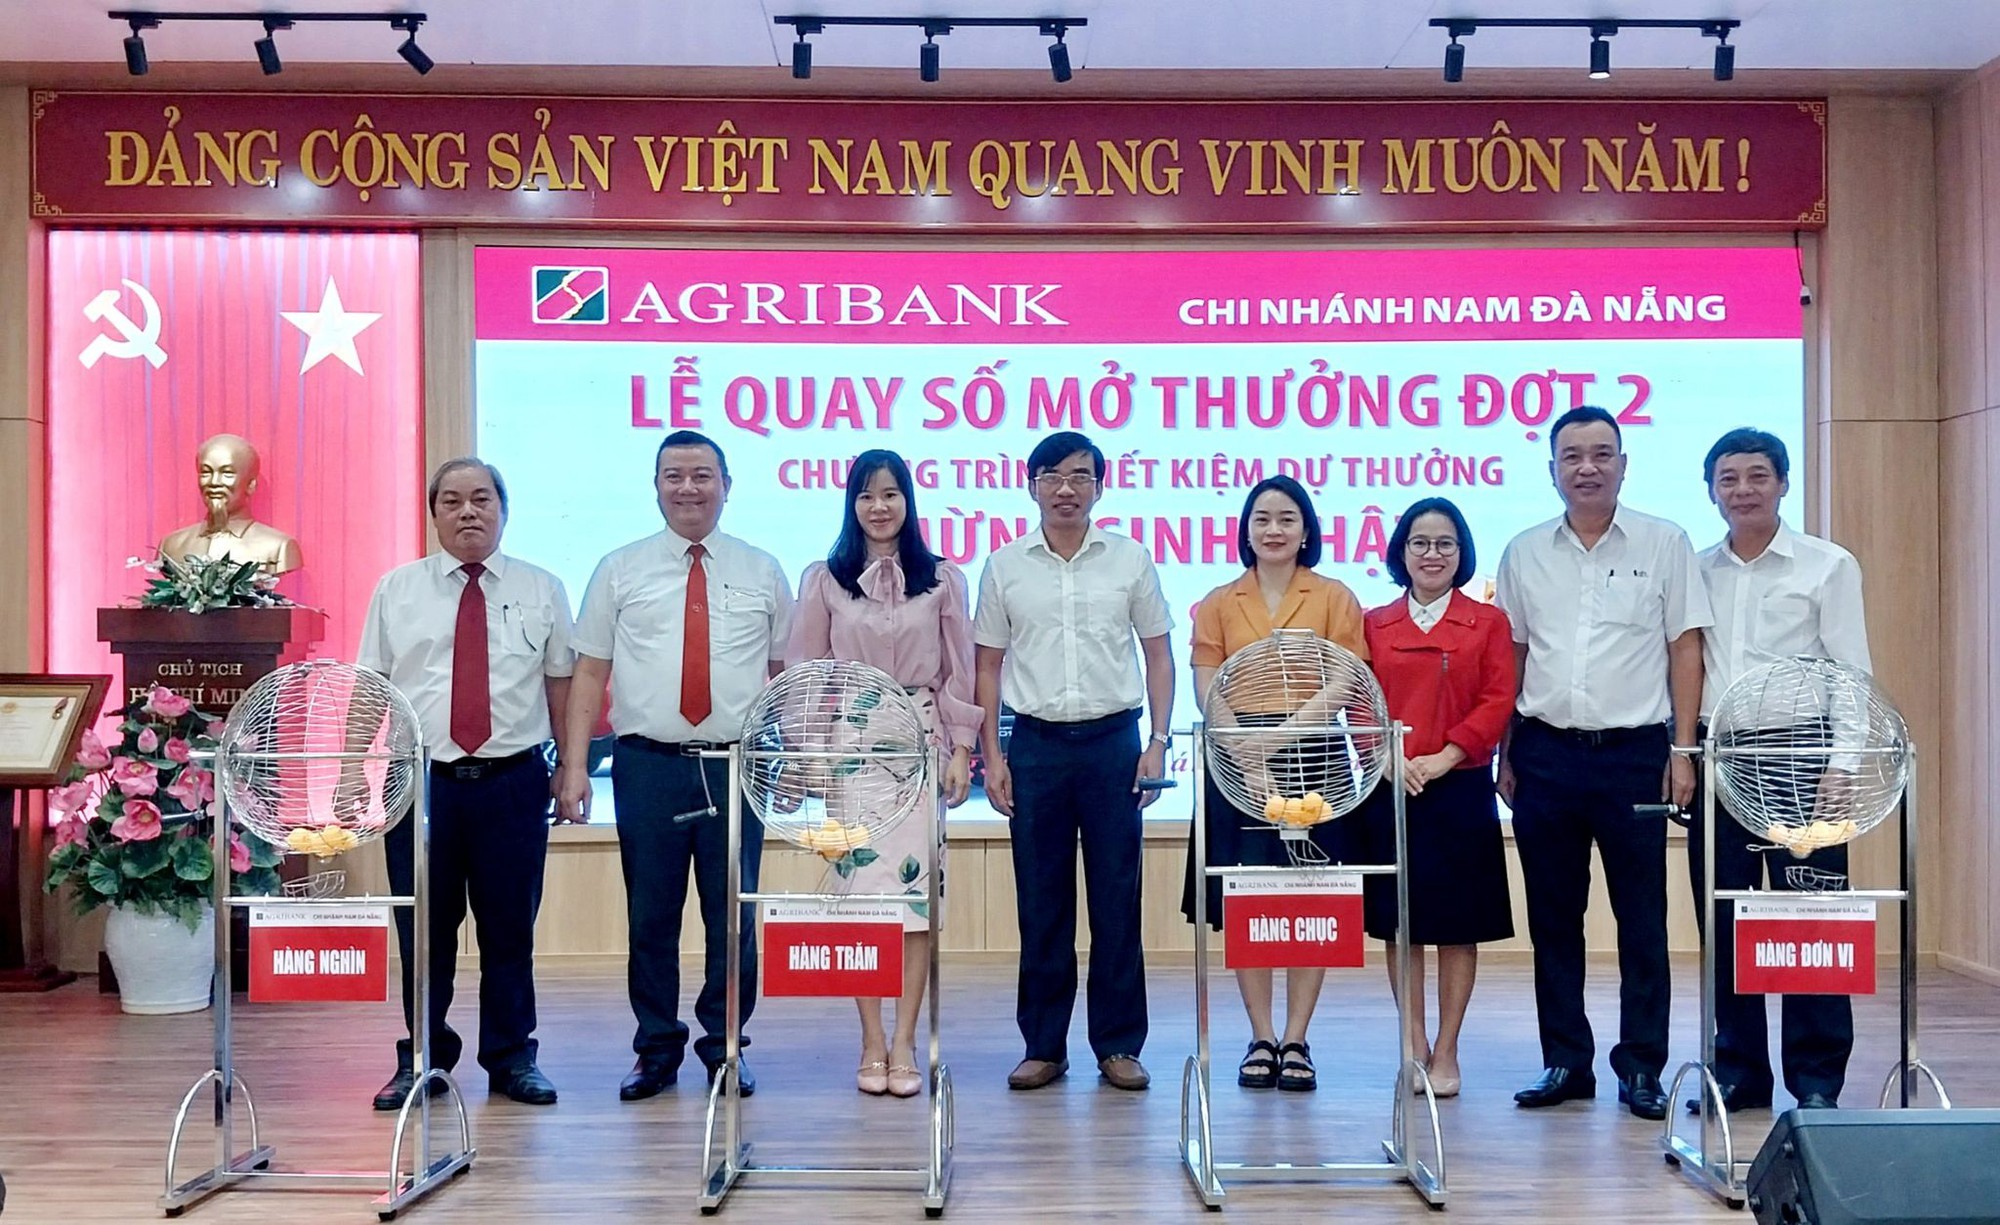 Agribank Nam Đà Nẵng quay số mở thưởng đợt 2 Chương trình “Mừng sinh nhật – nhận xe sang”- Ảnh 3.